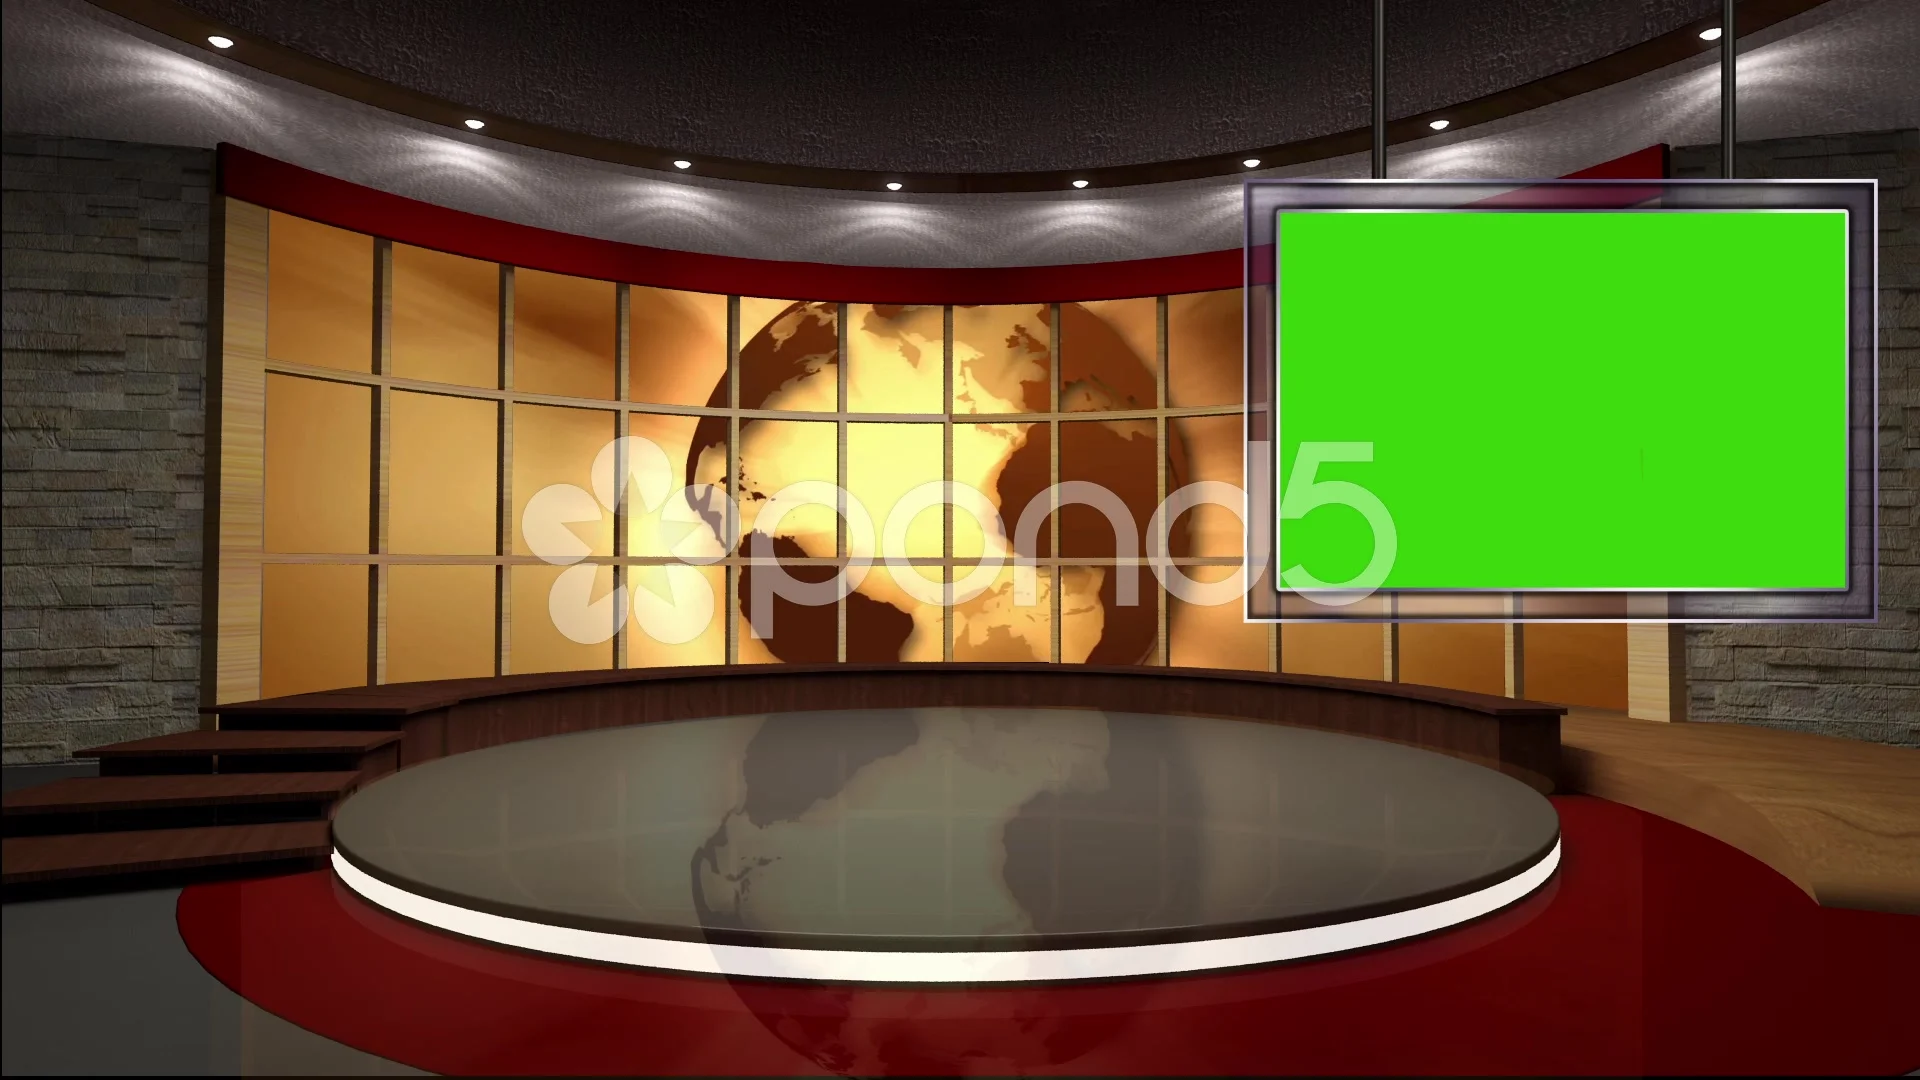 News TV Studio Set 40 - Virtual Green Screen Background Loop ~ Footage ...